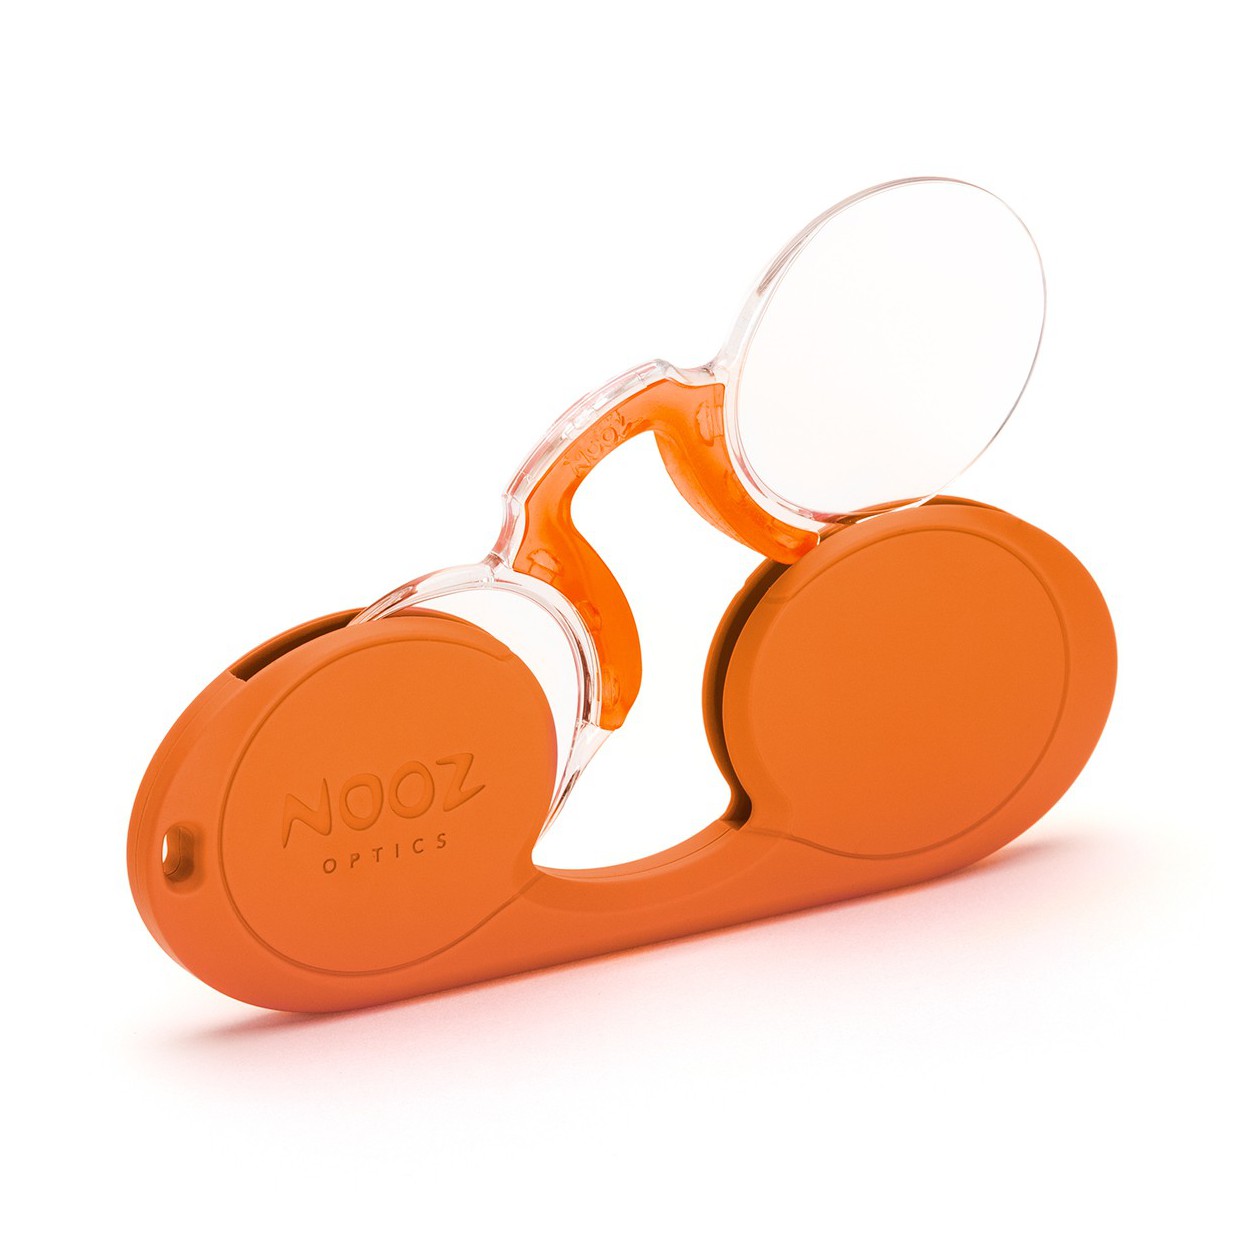 An image of Nooz Optics Oval Reading Glasses - Orange +1